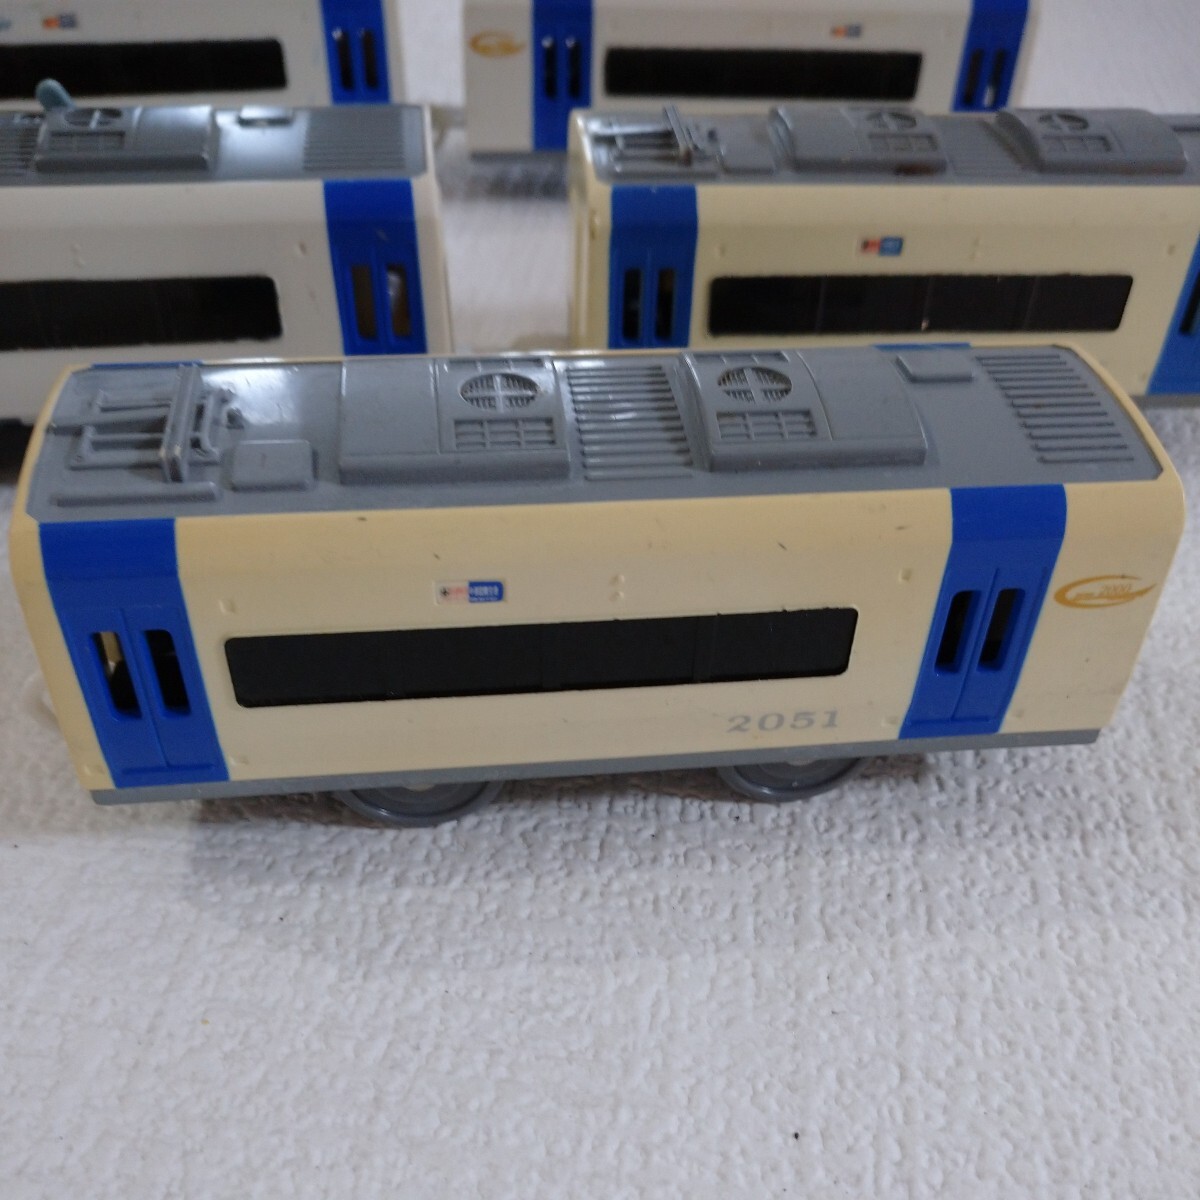 A② Tomica Plarail объединенный specification совместно Shinkansen TOMY. голова машина игрушка транспортное средство kore расческа . работоспособность не проверялась 2000 серия Mu Sky 